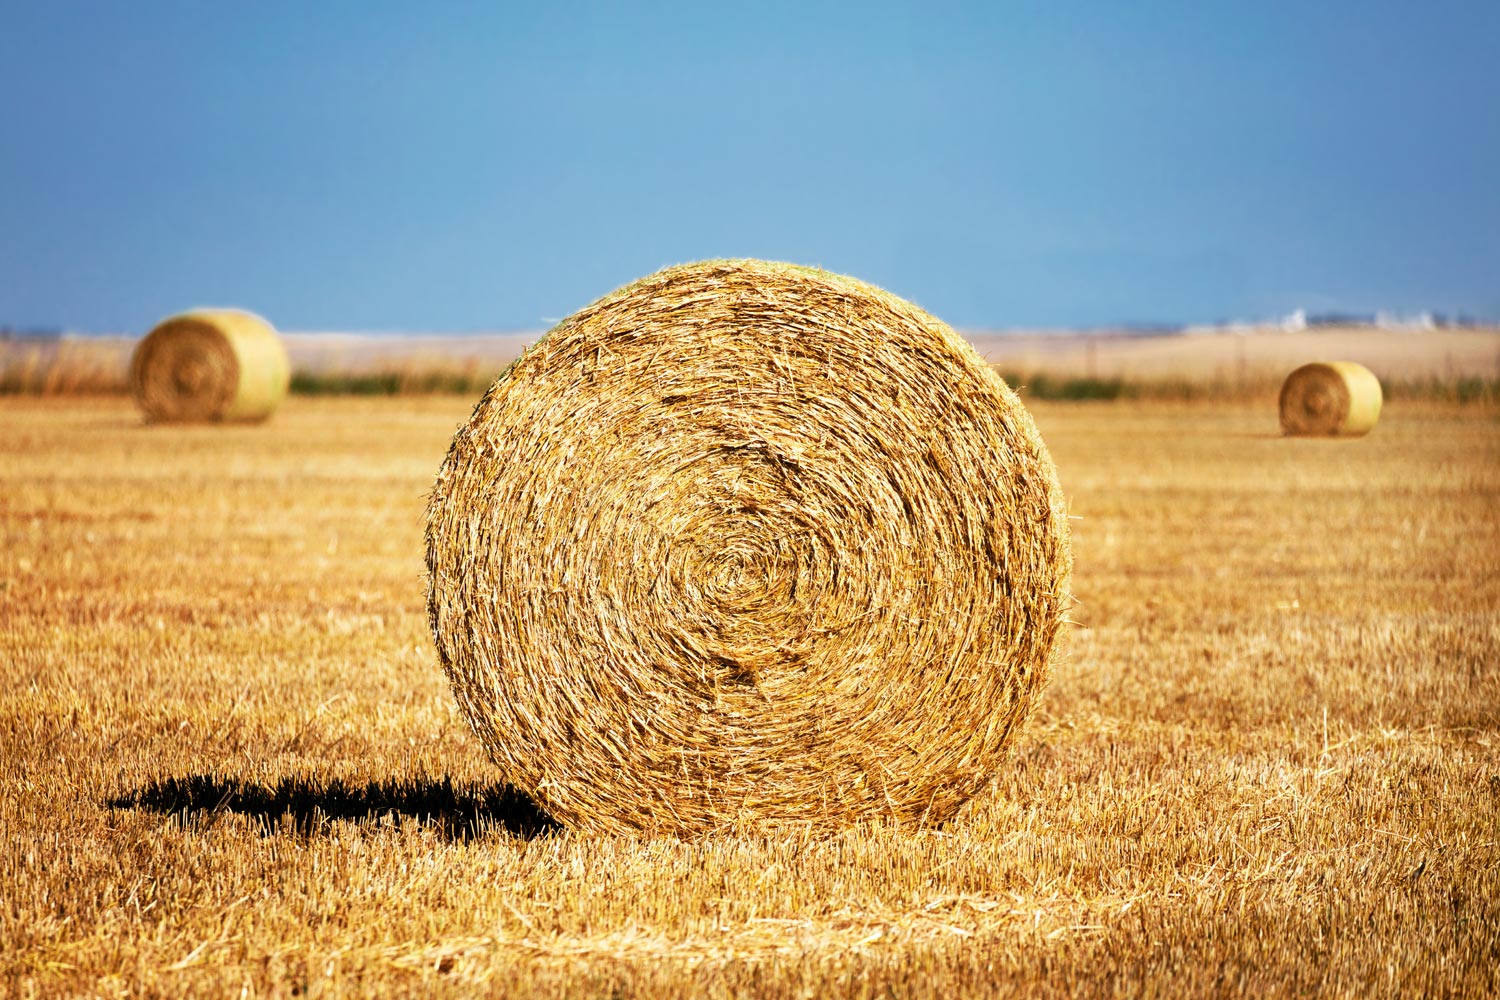 Round bales of wheat straw in a field west of Brady, Montana.